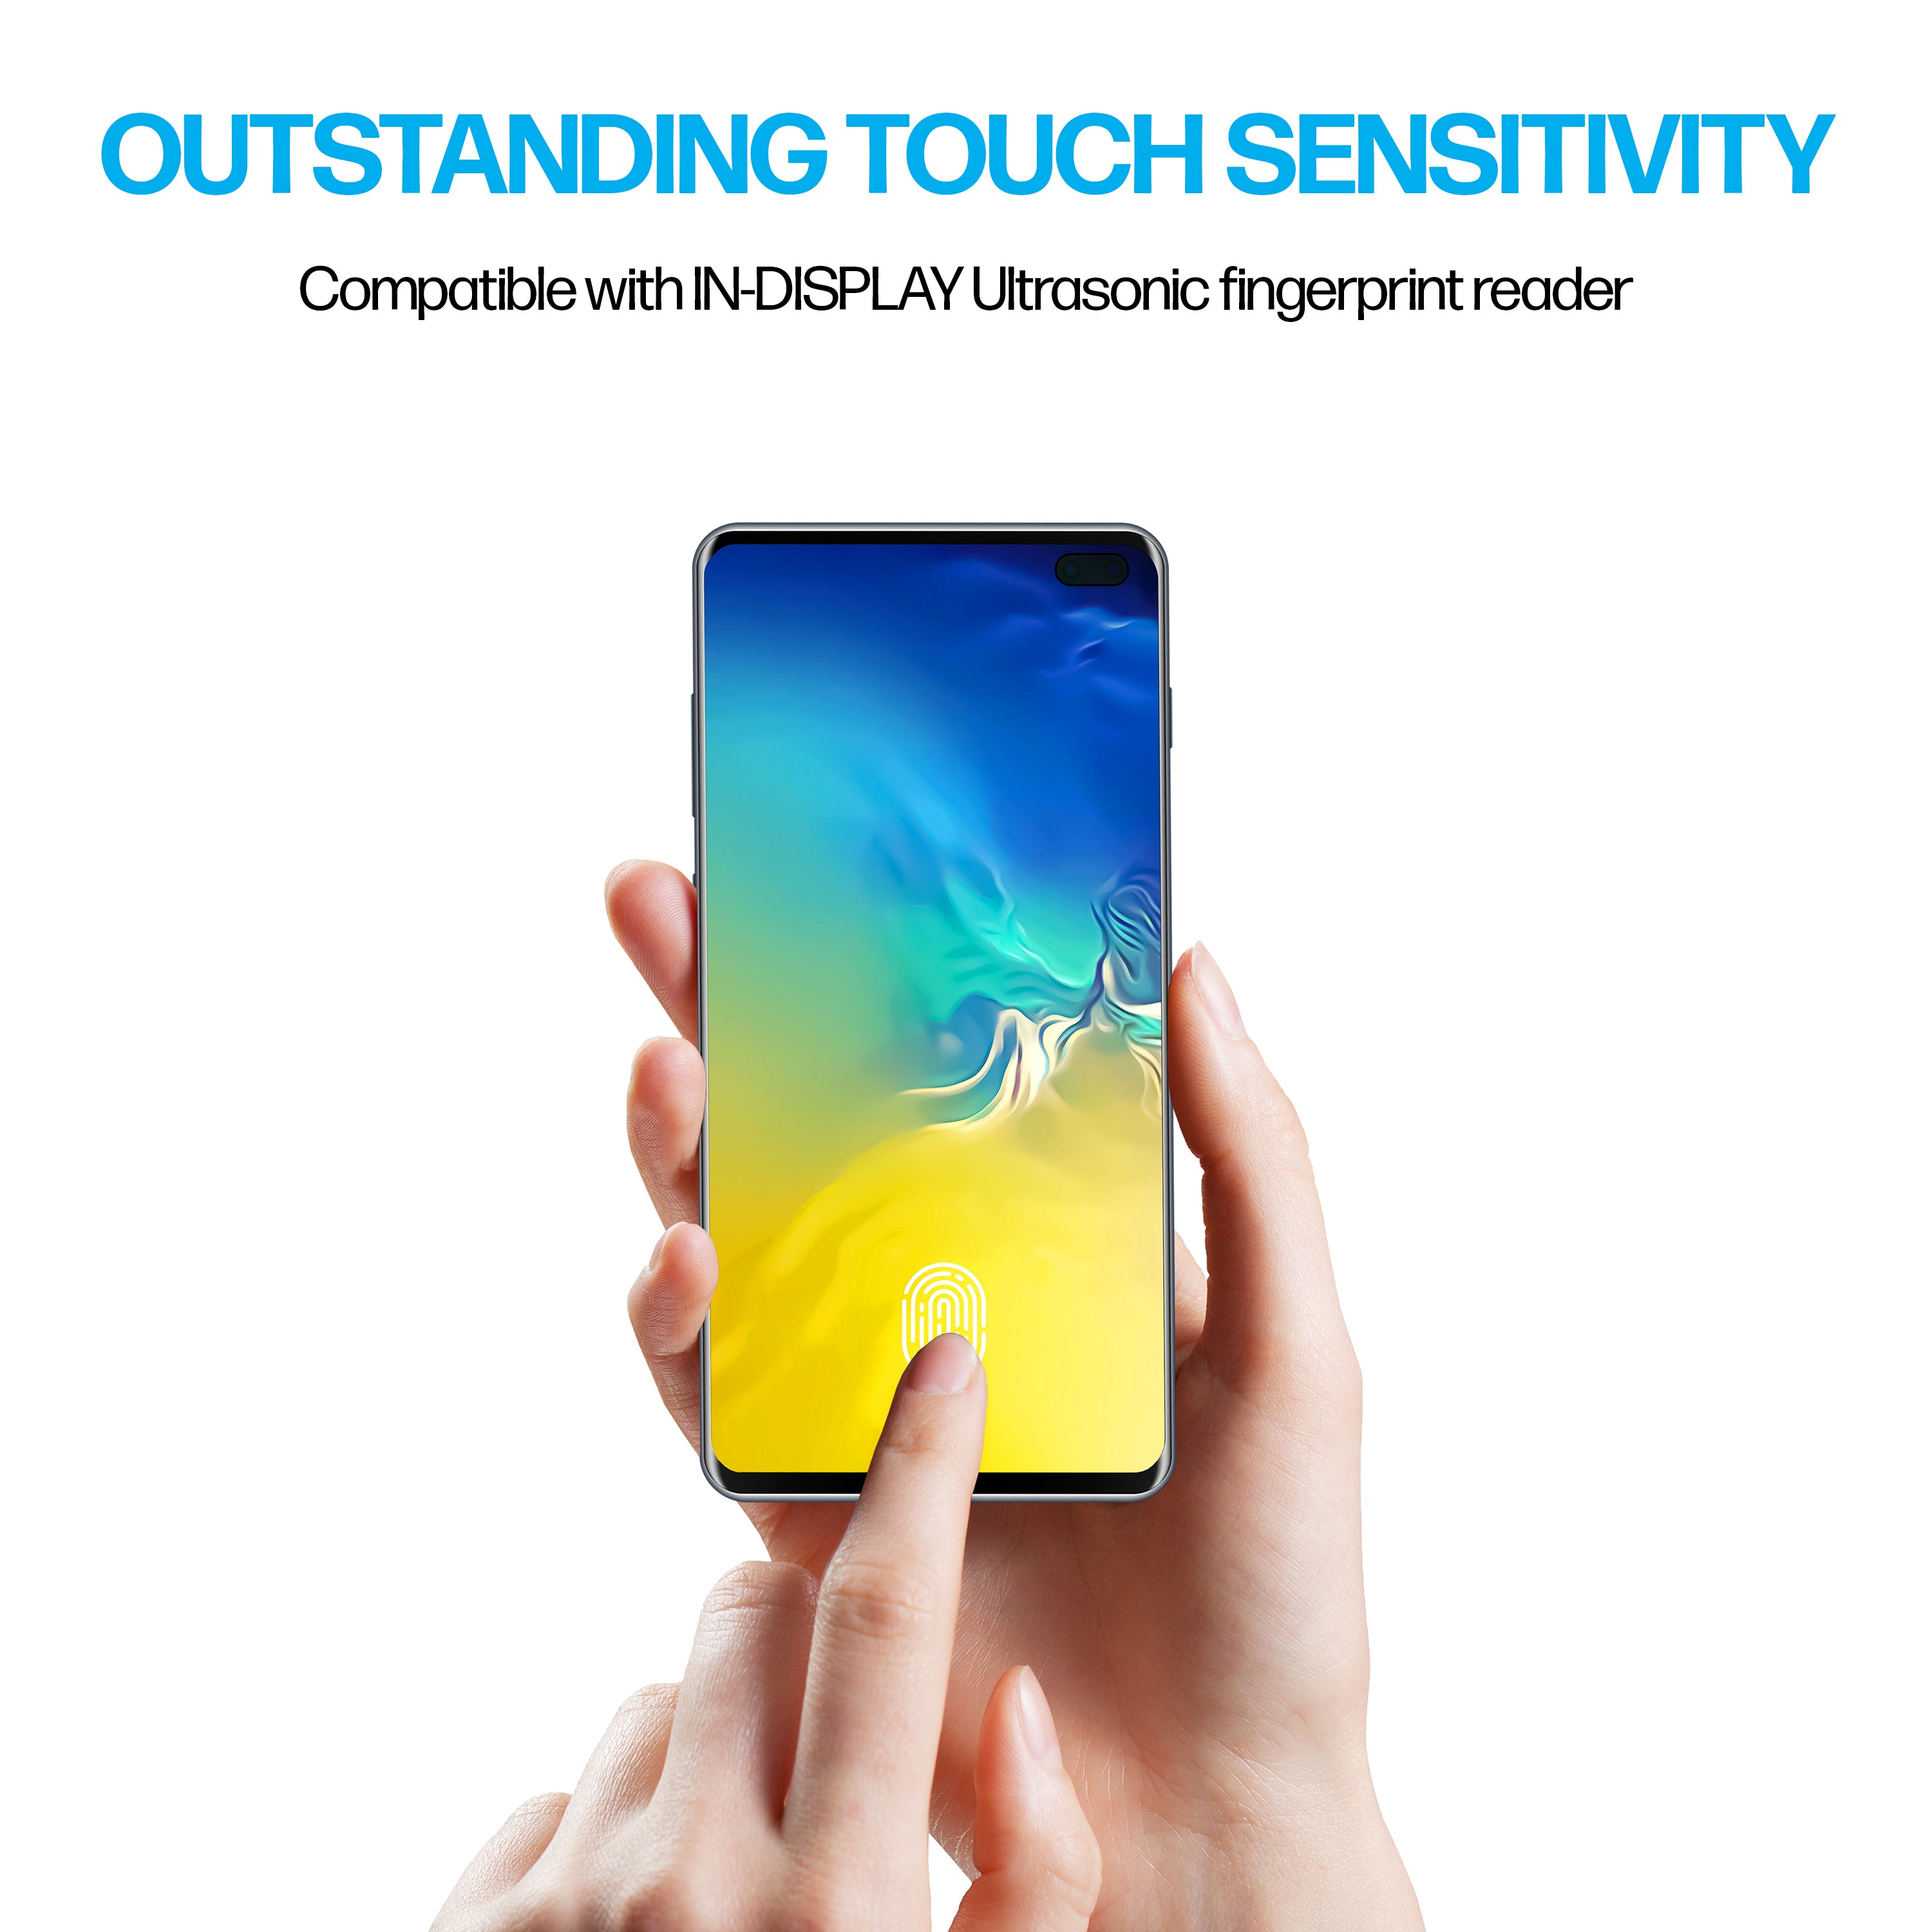 Samsung Galaxy S10 Plus TPU Anti-Scratch Screen Protector Film [2-Pack]